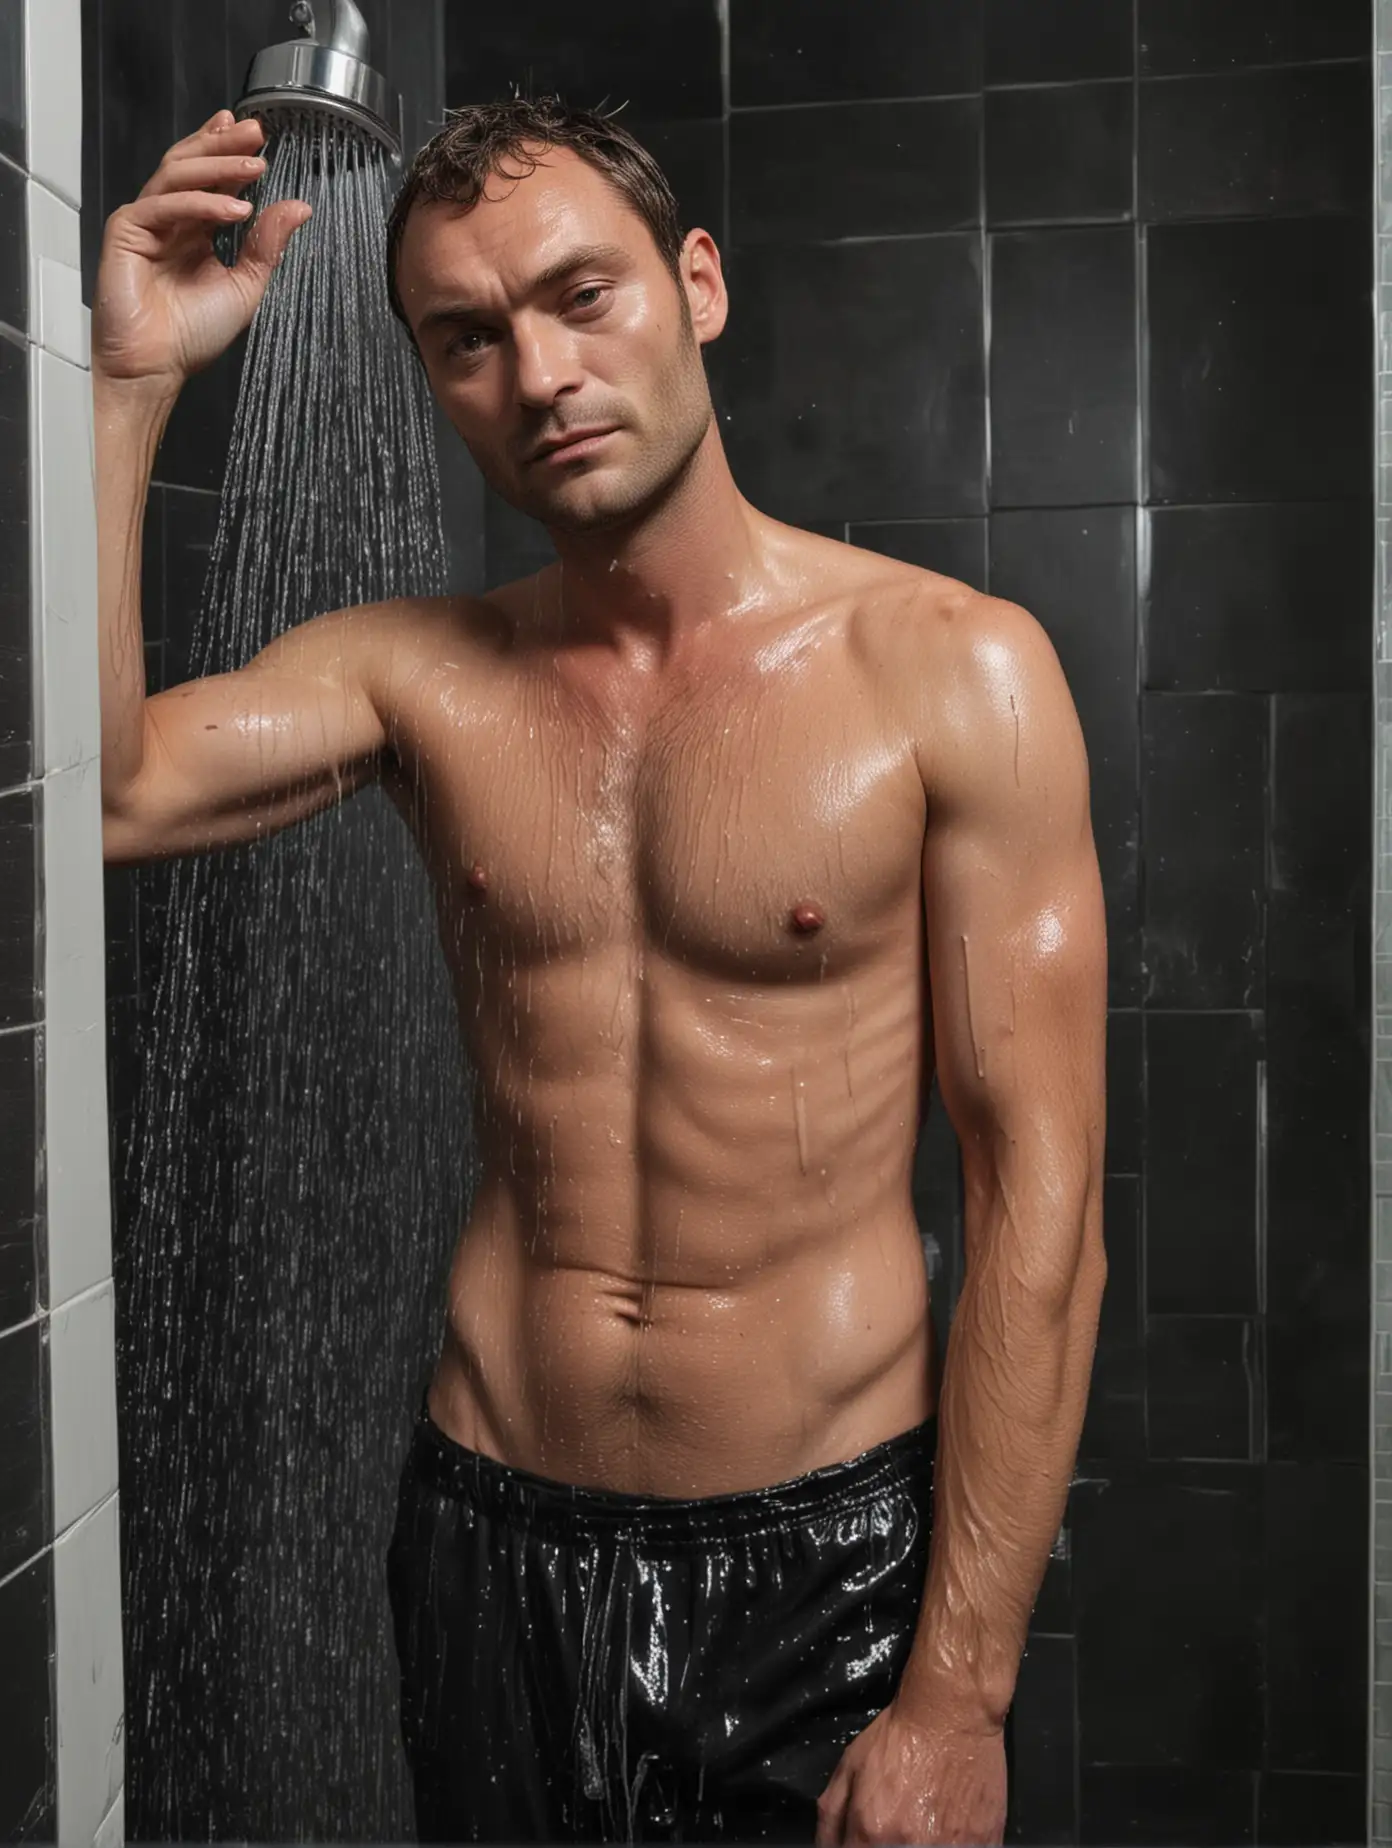 Jude-Law-Lookalike-Showering-in-Stylish-BlackTiled-Bathroom